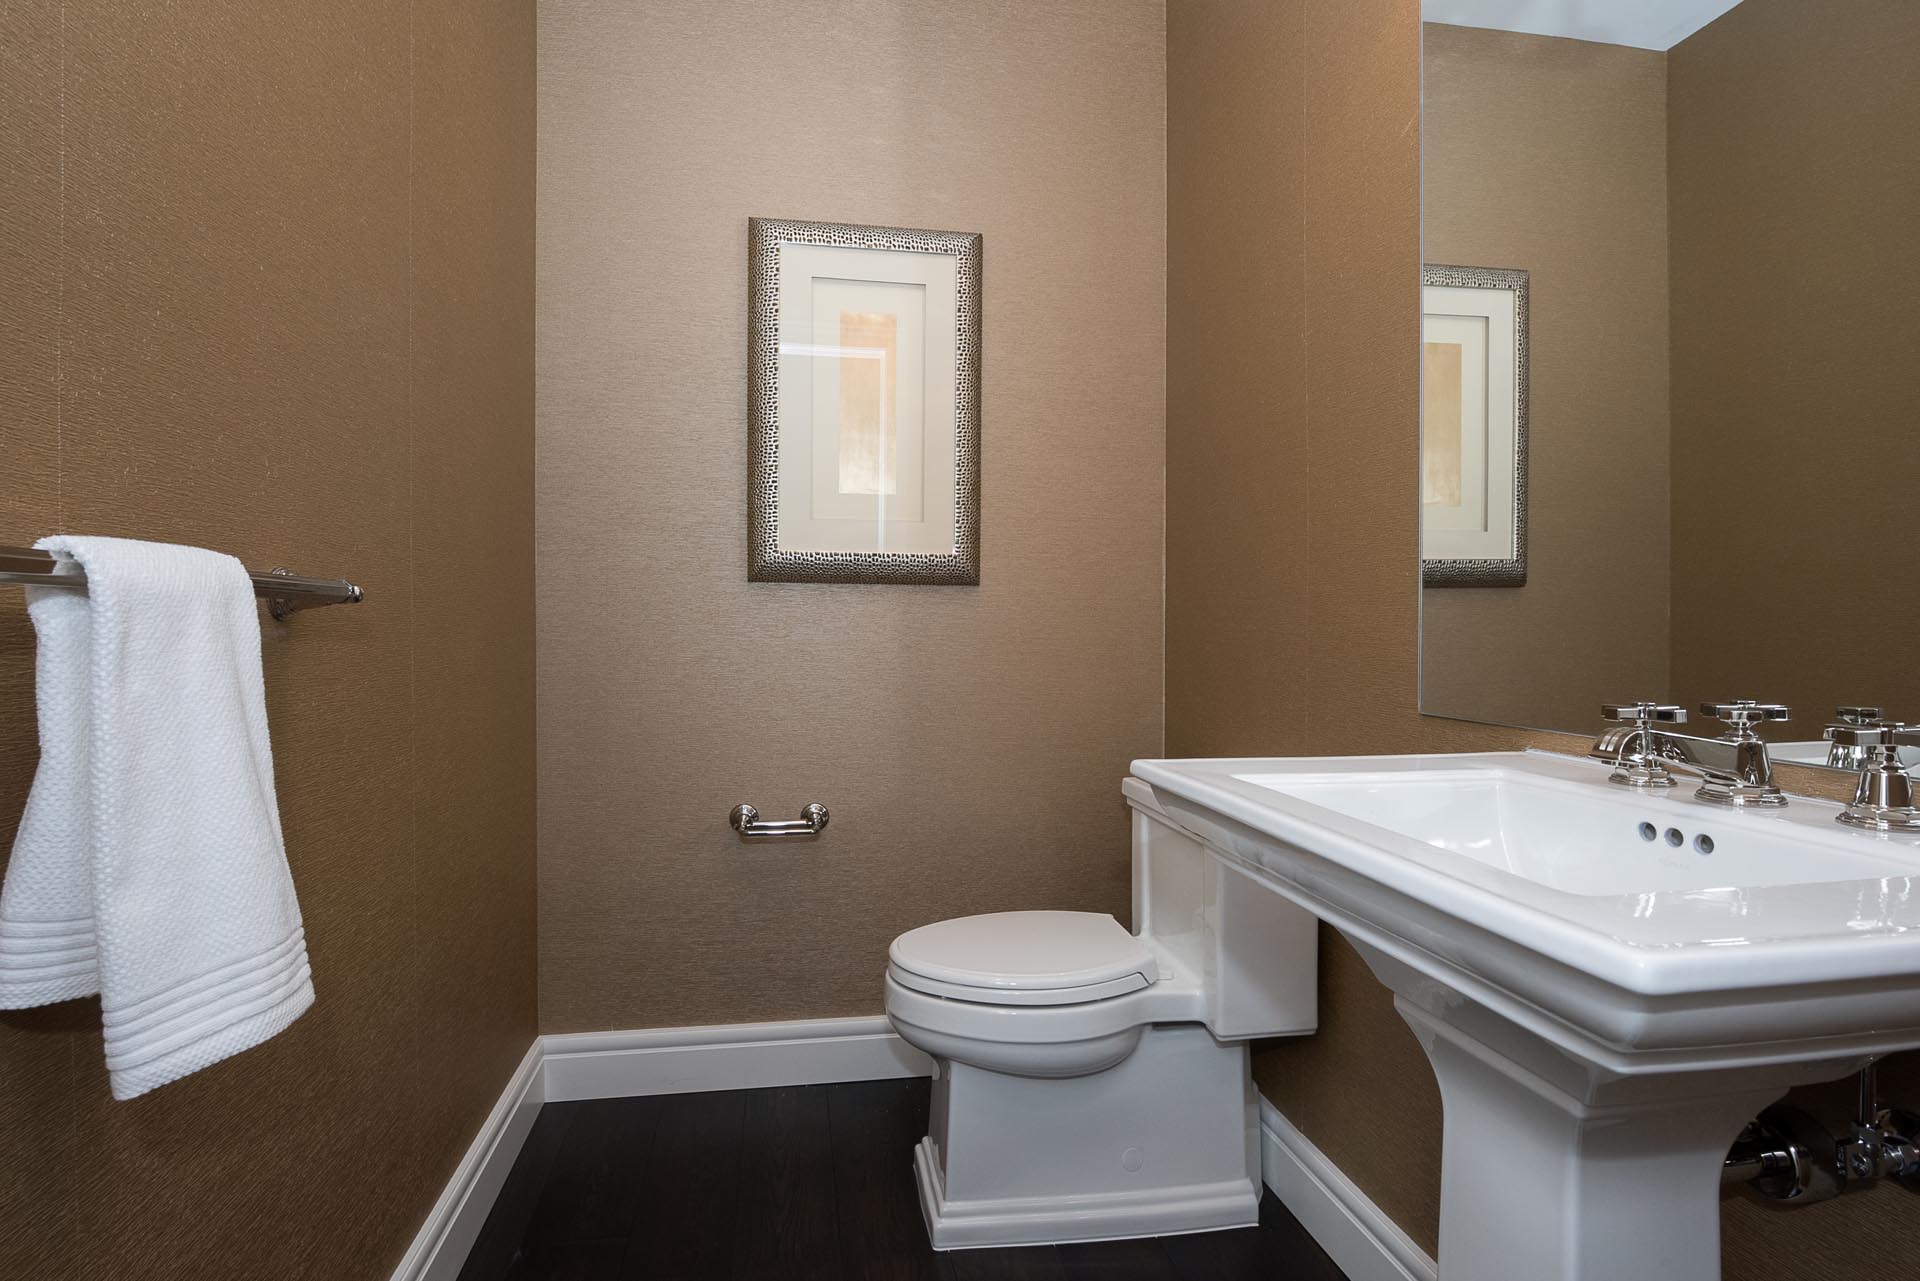 Bathroom Design | H Residence | Midland, MI